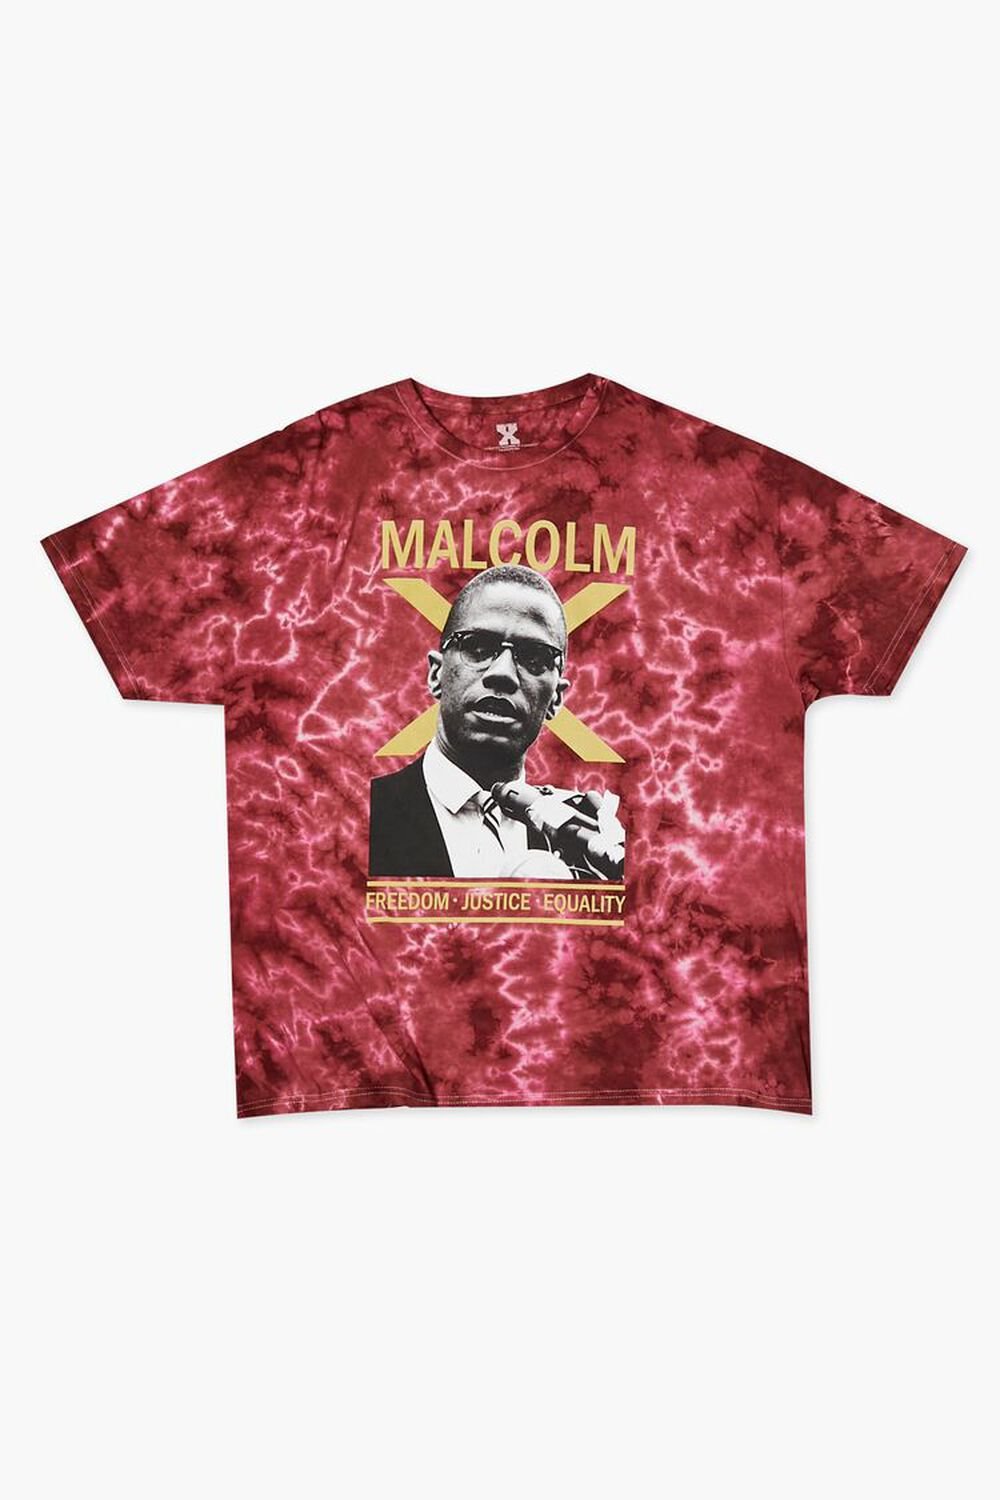 COCOA/MULTI Tie-Dye Malcolm X Graphic Tee, image 1